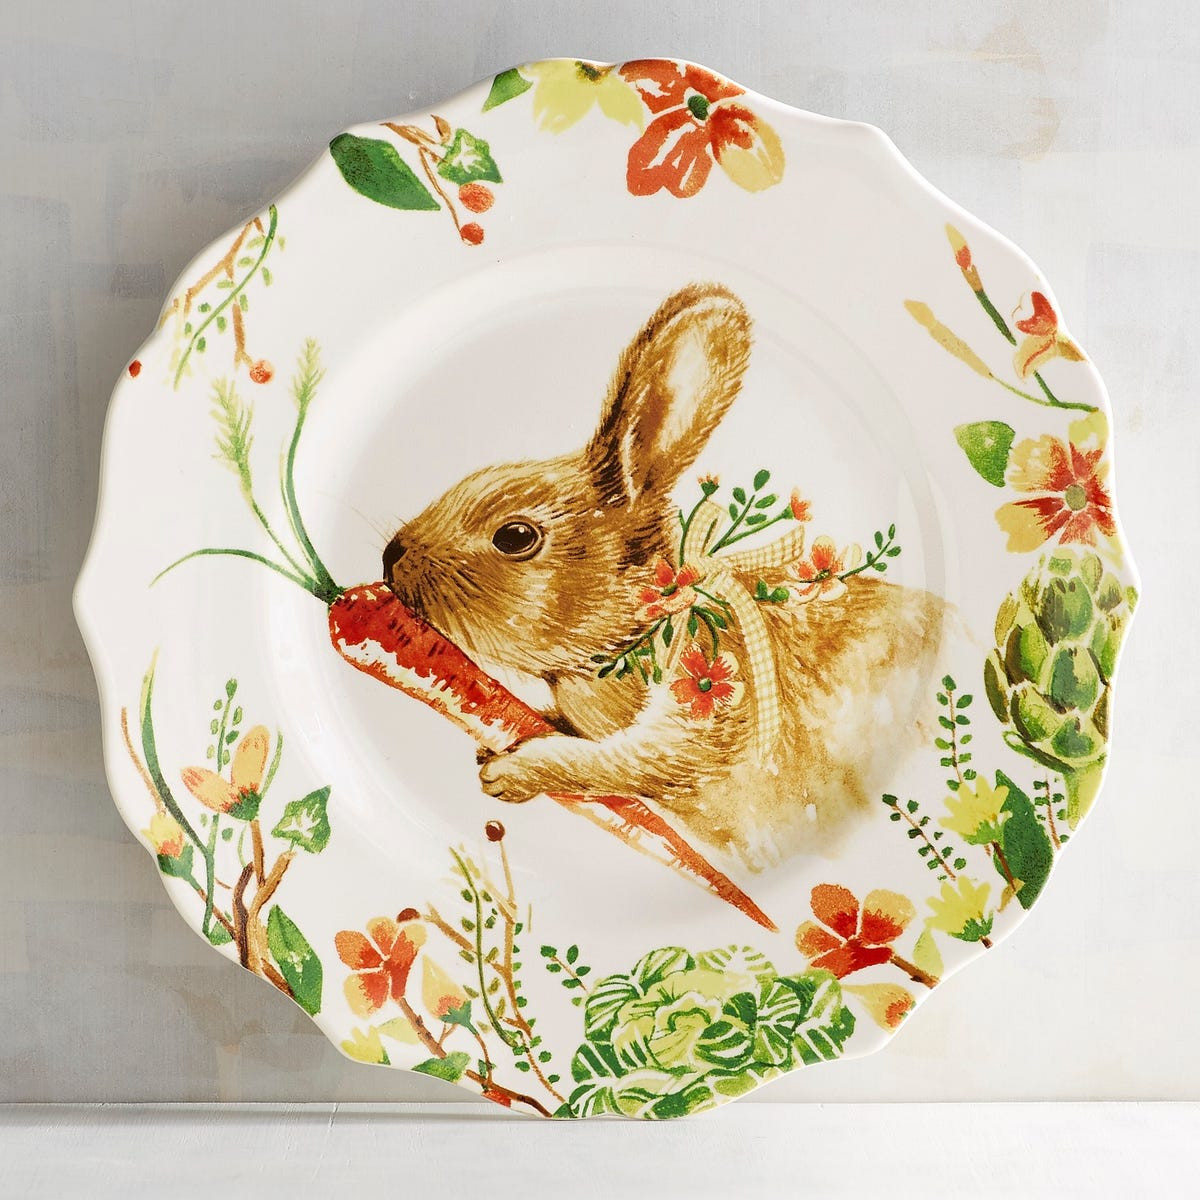 Easter Dinner Plates
 Bunny Dinner Plates